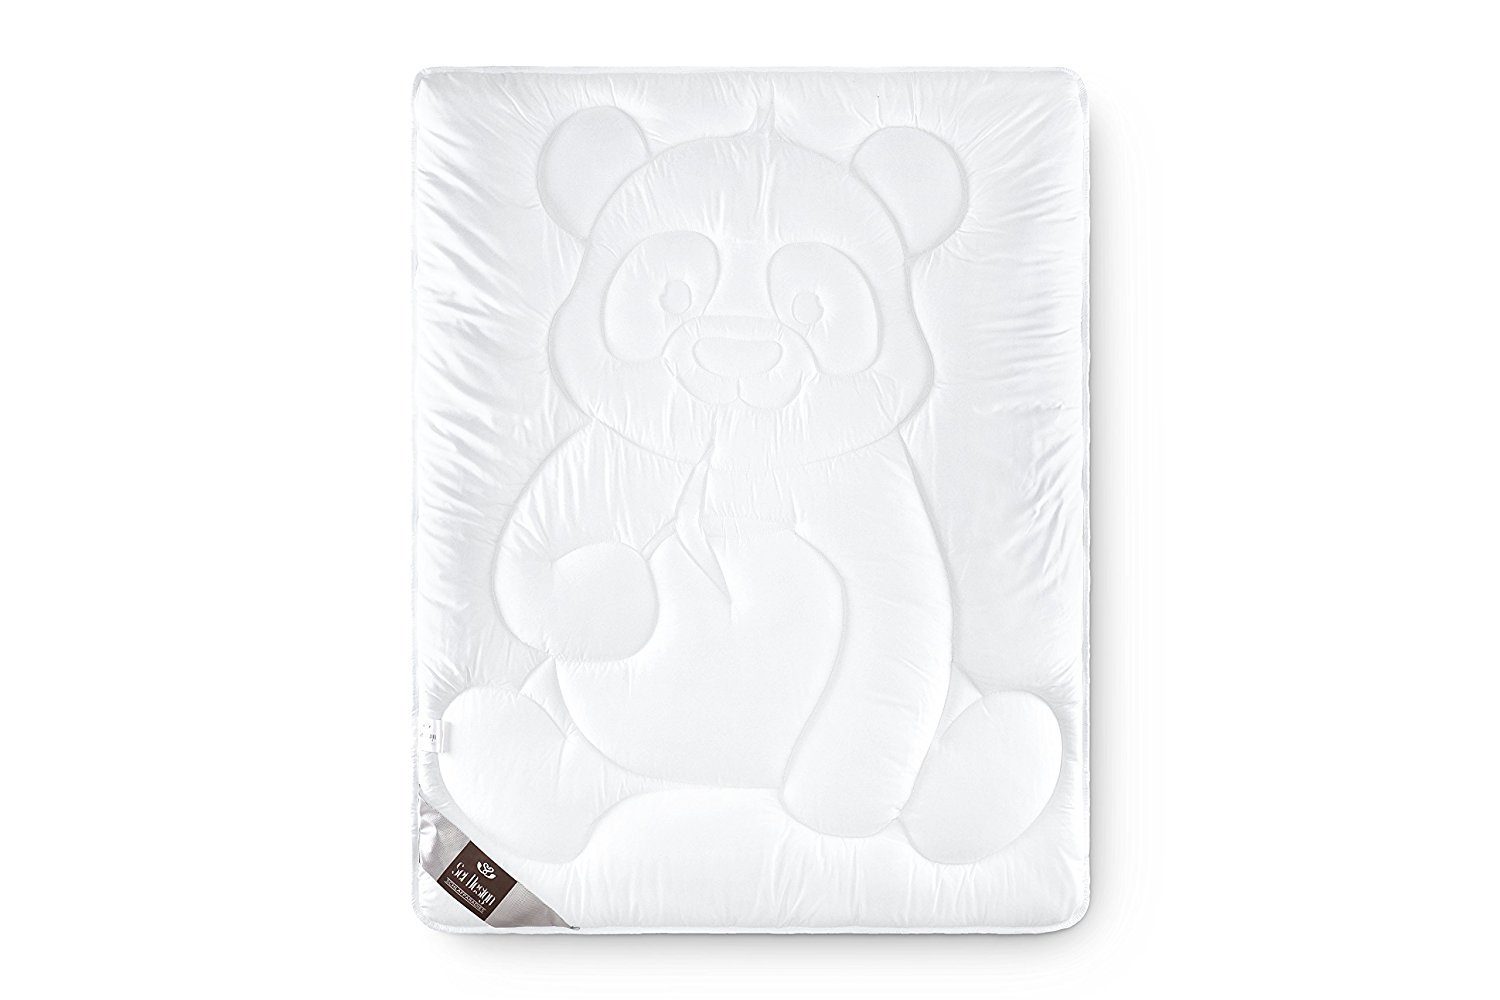 Füllung: Pandabär 100x135 SEI Kinderbettdecke, Design, Pandabär, Poyester, gesteppter